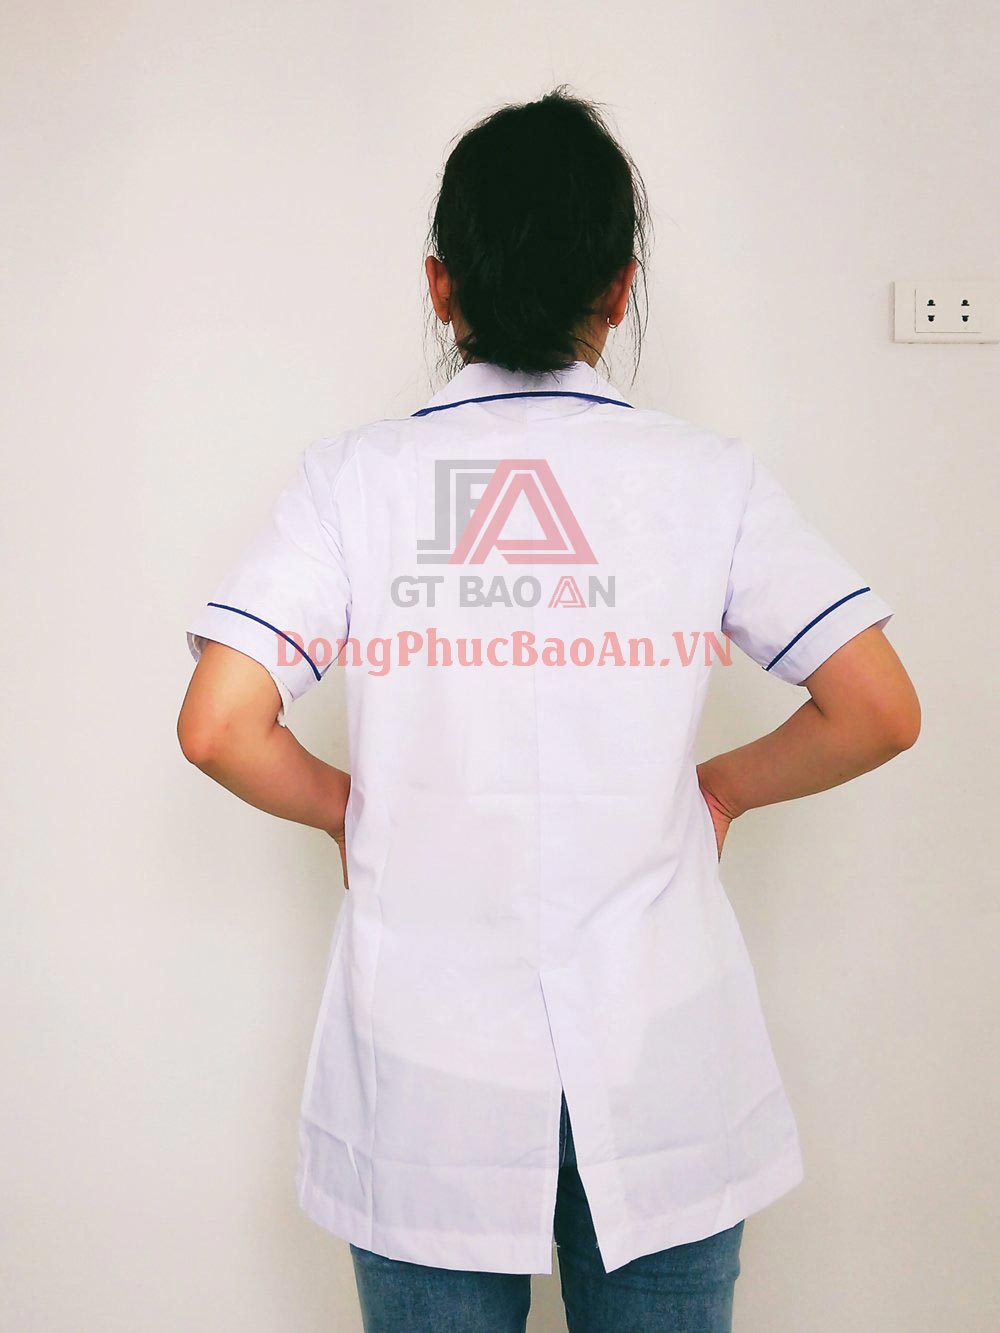 Mẫu áo đồng phục blouse trắng tay ngắn cho y tá bệnh viện TPHCM | Công ty Davico 